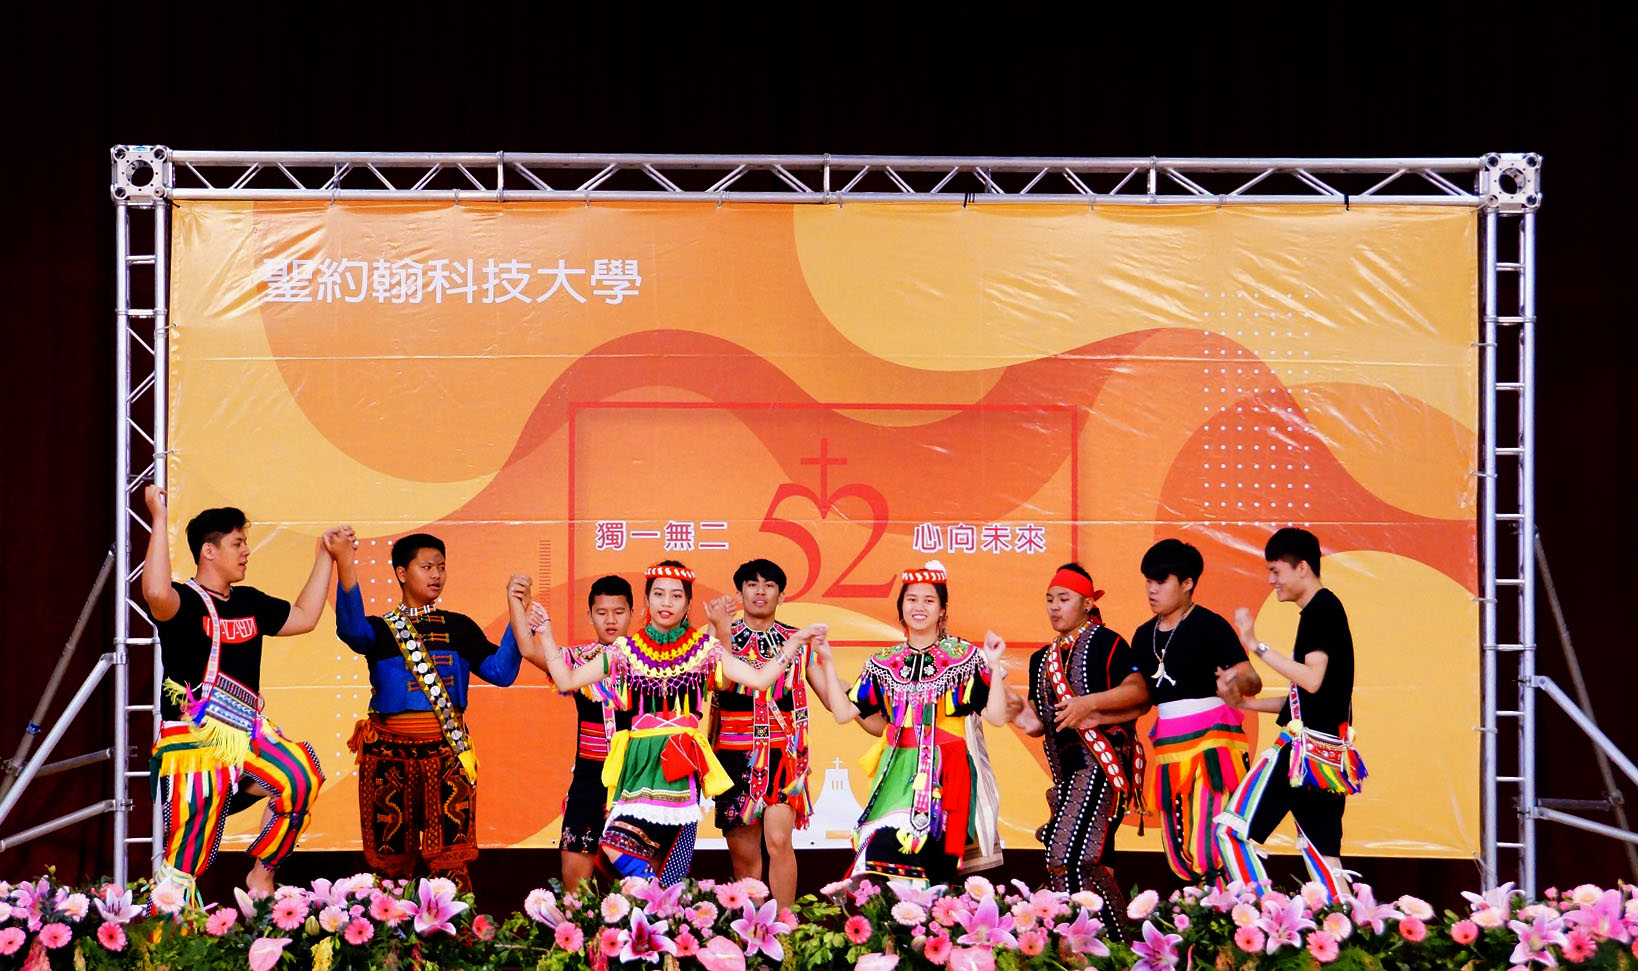 校慶大會由原創文化社帶來精彩的原住民族傳統舞蹈表演，炒熱現場氣氛